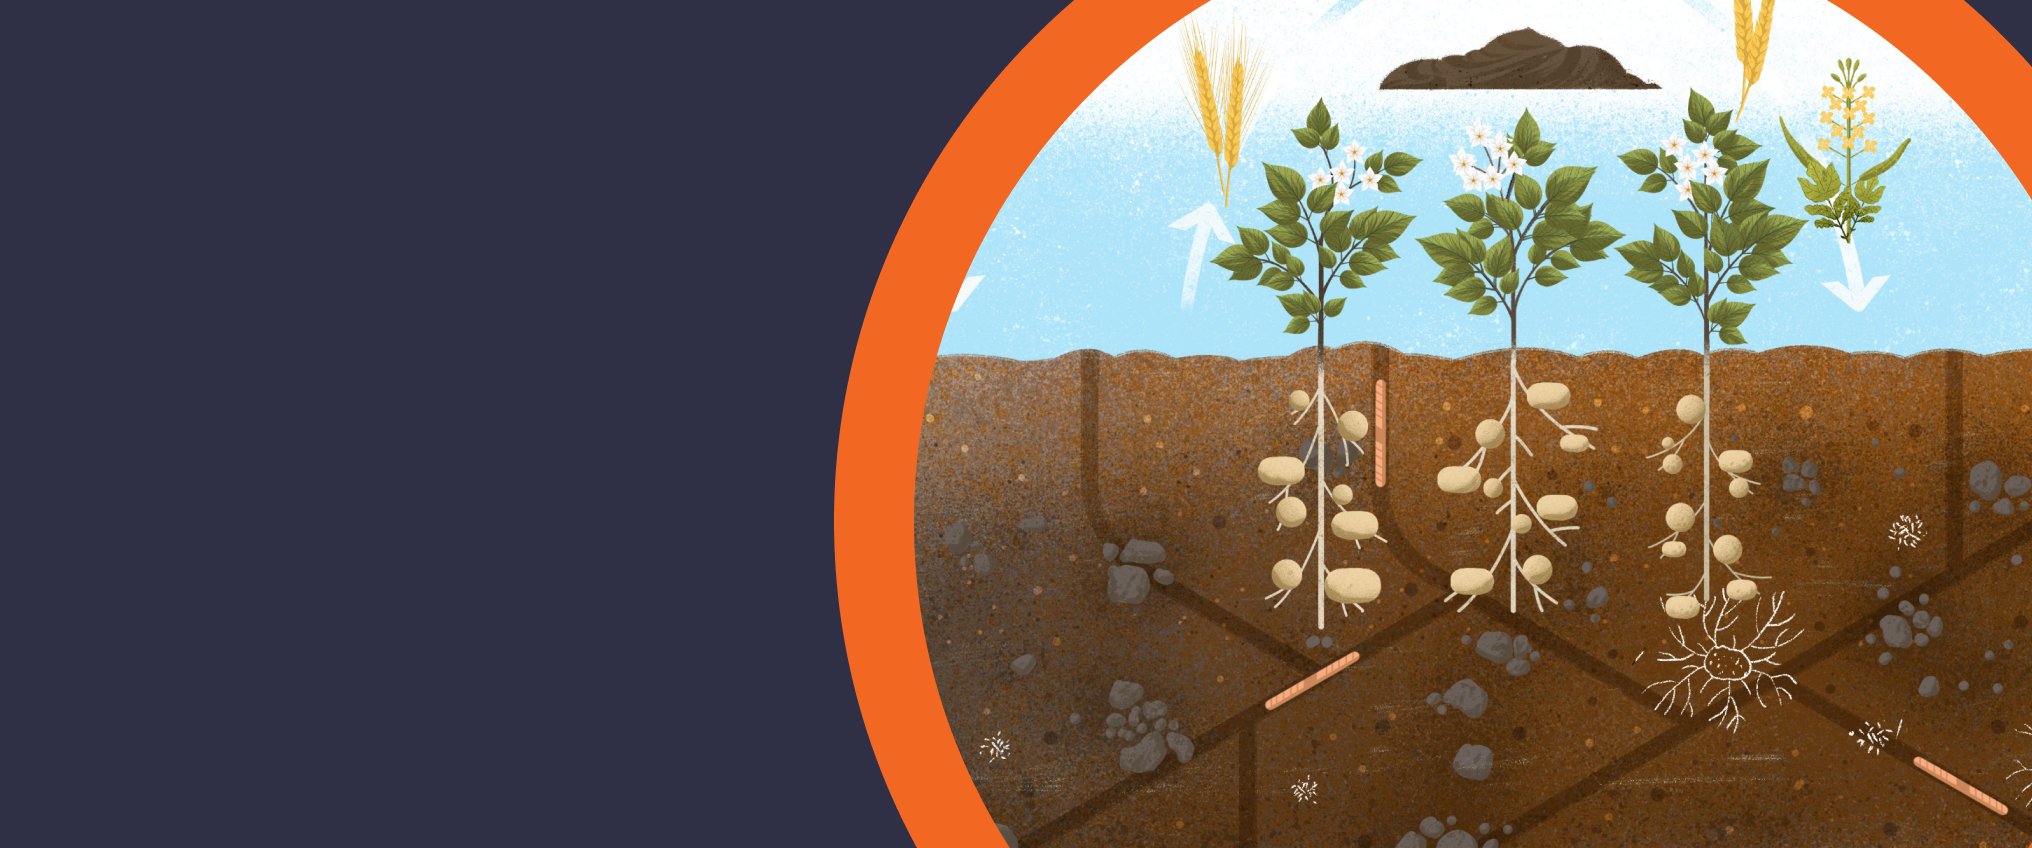 soil illustration